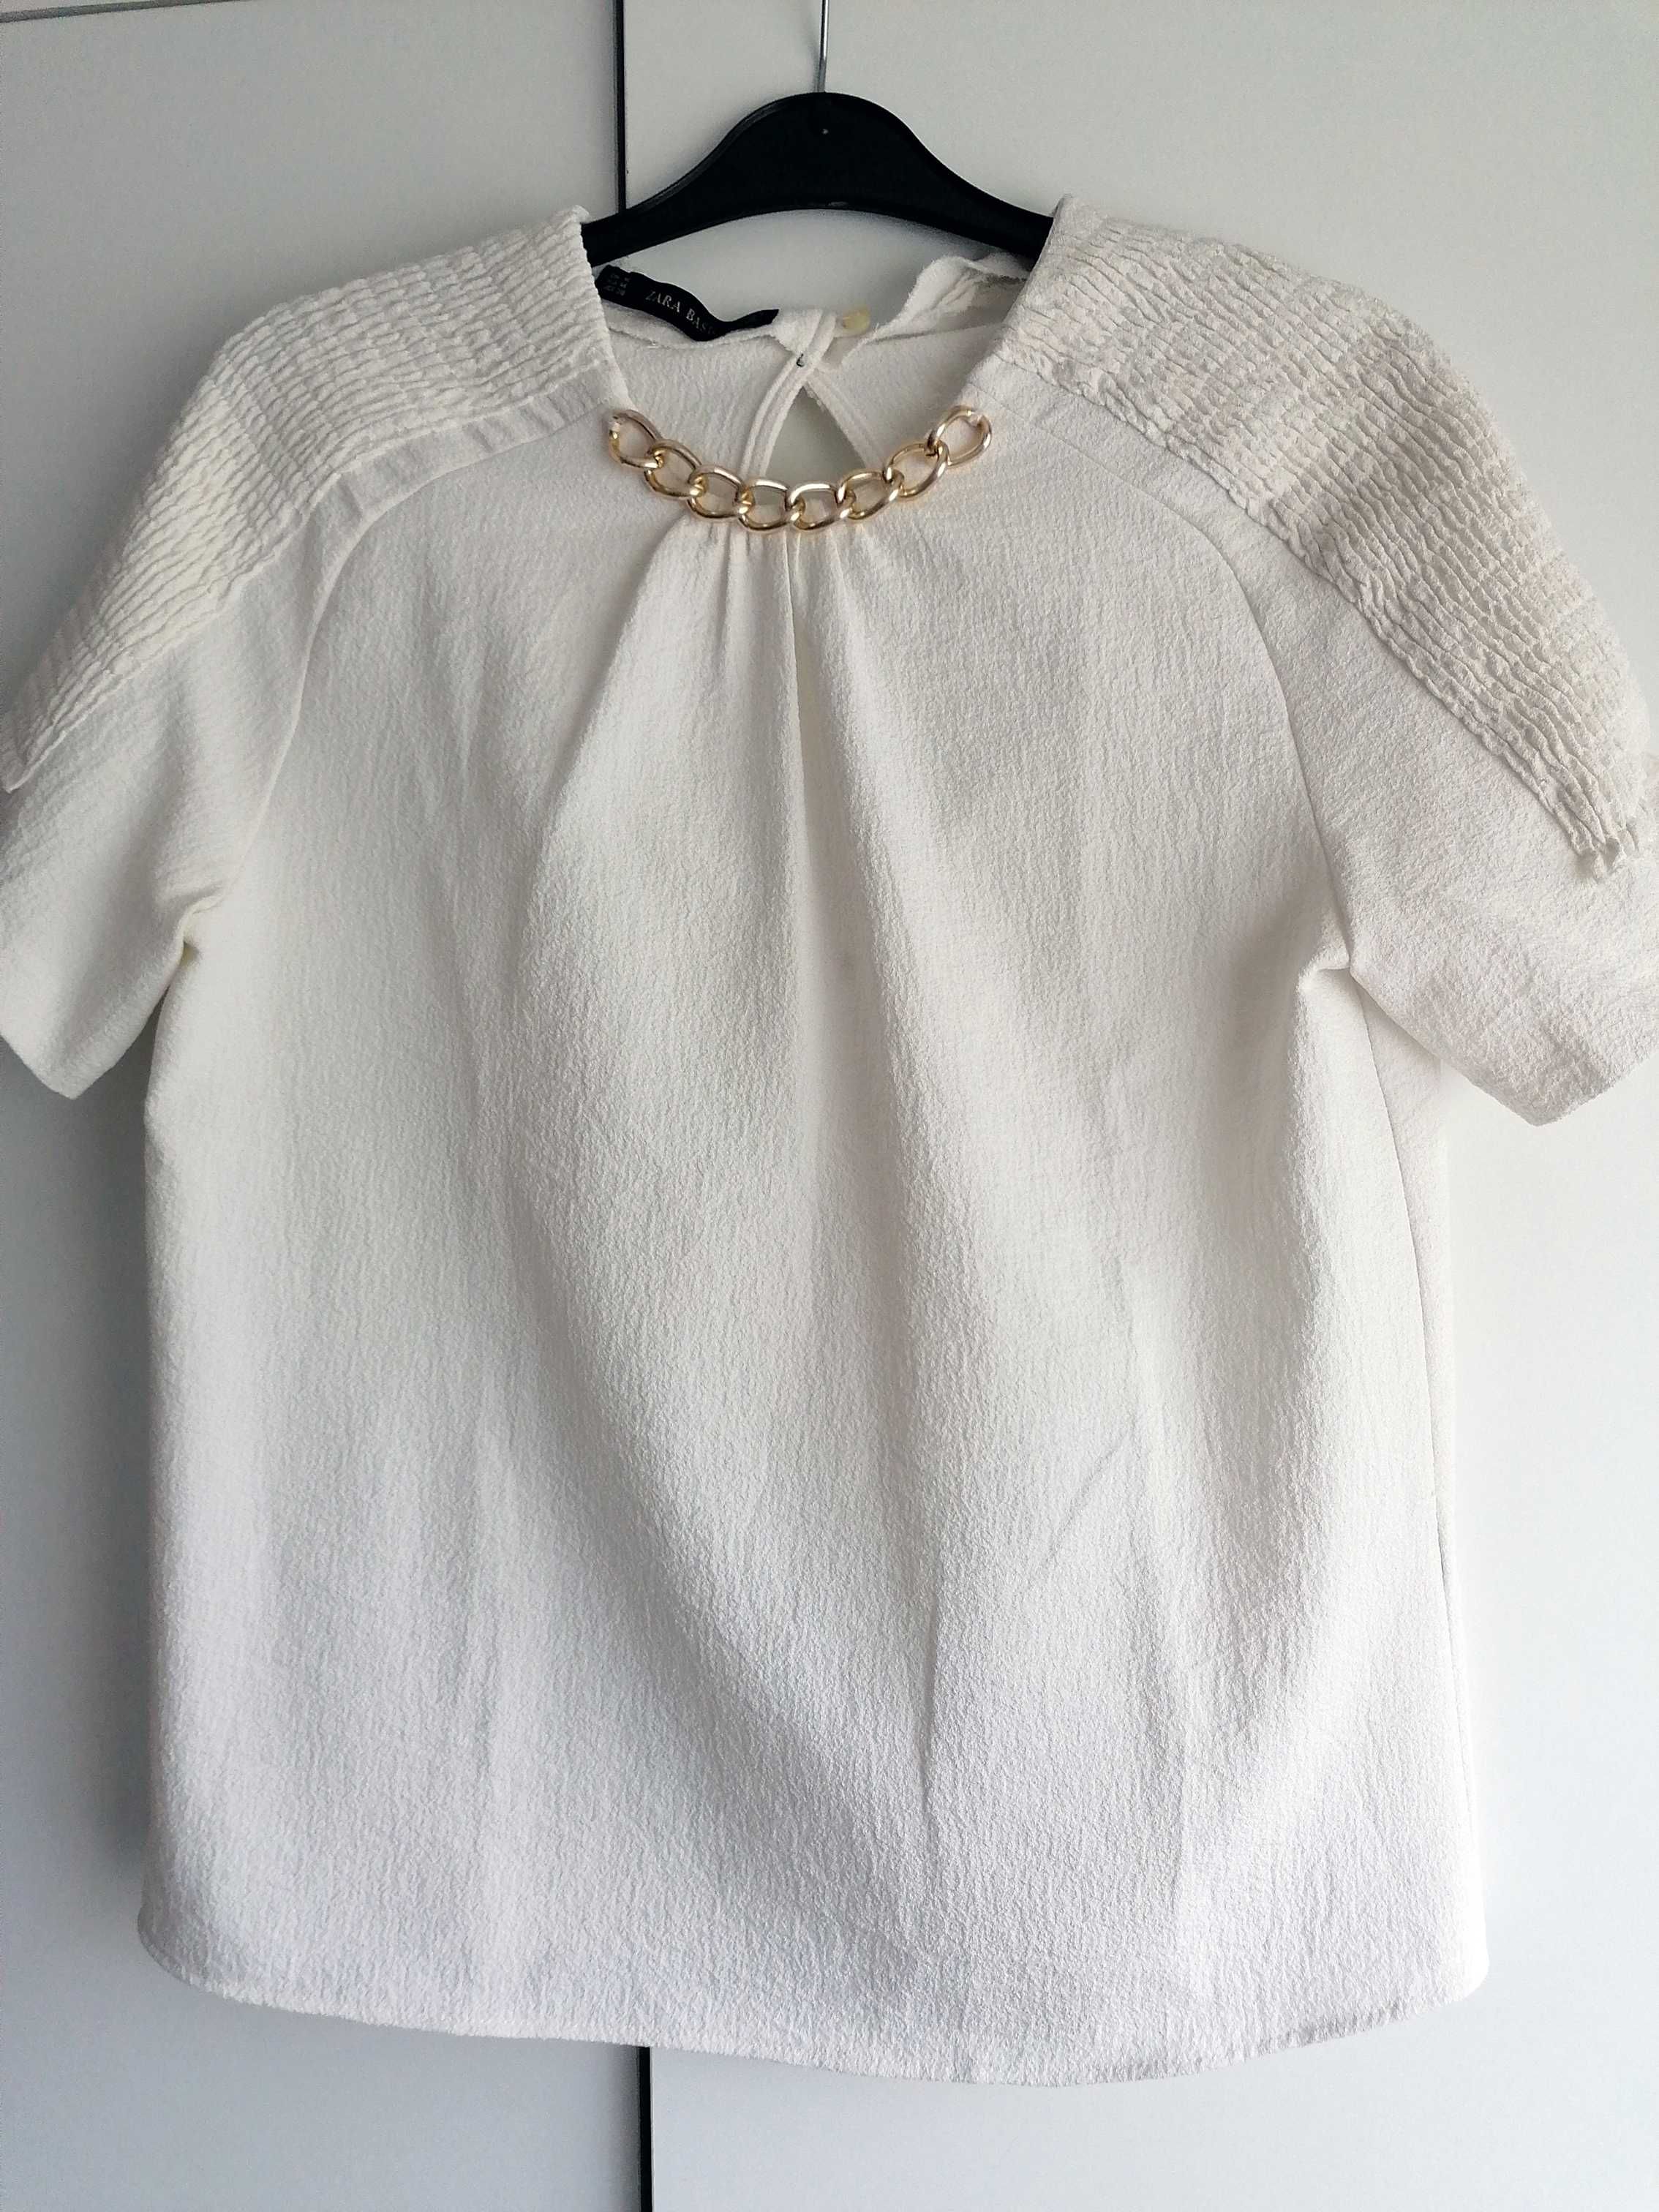 Blusa branca manga curta com corrente dourada Zara